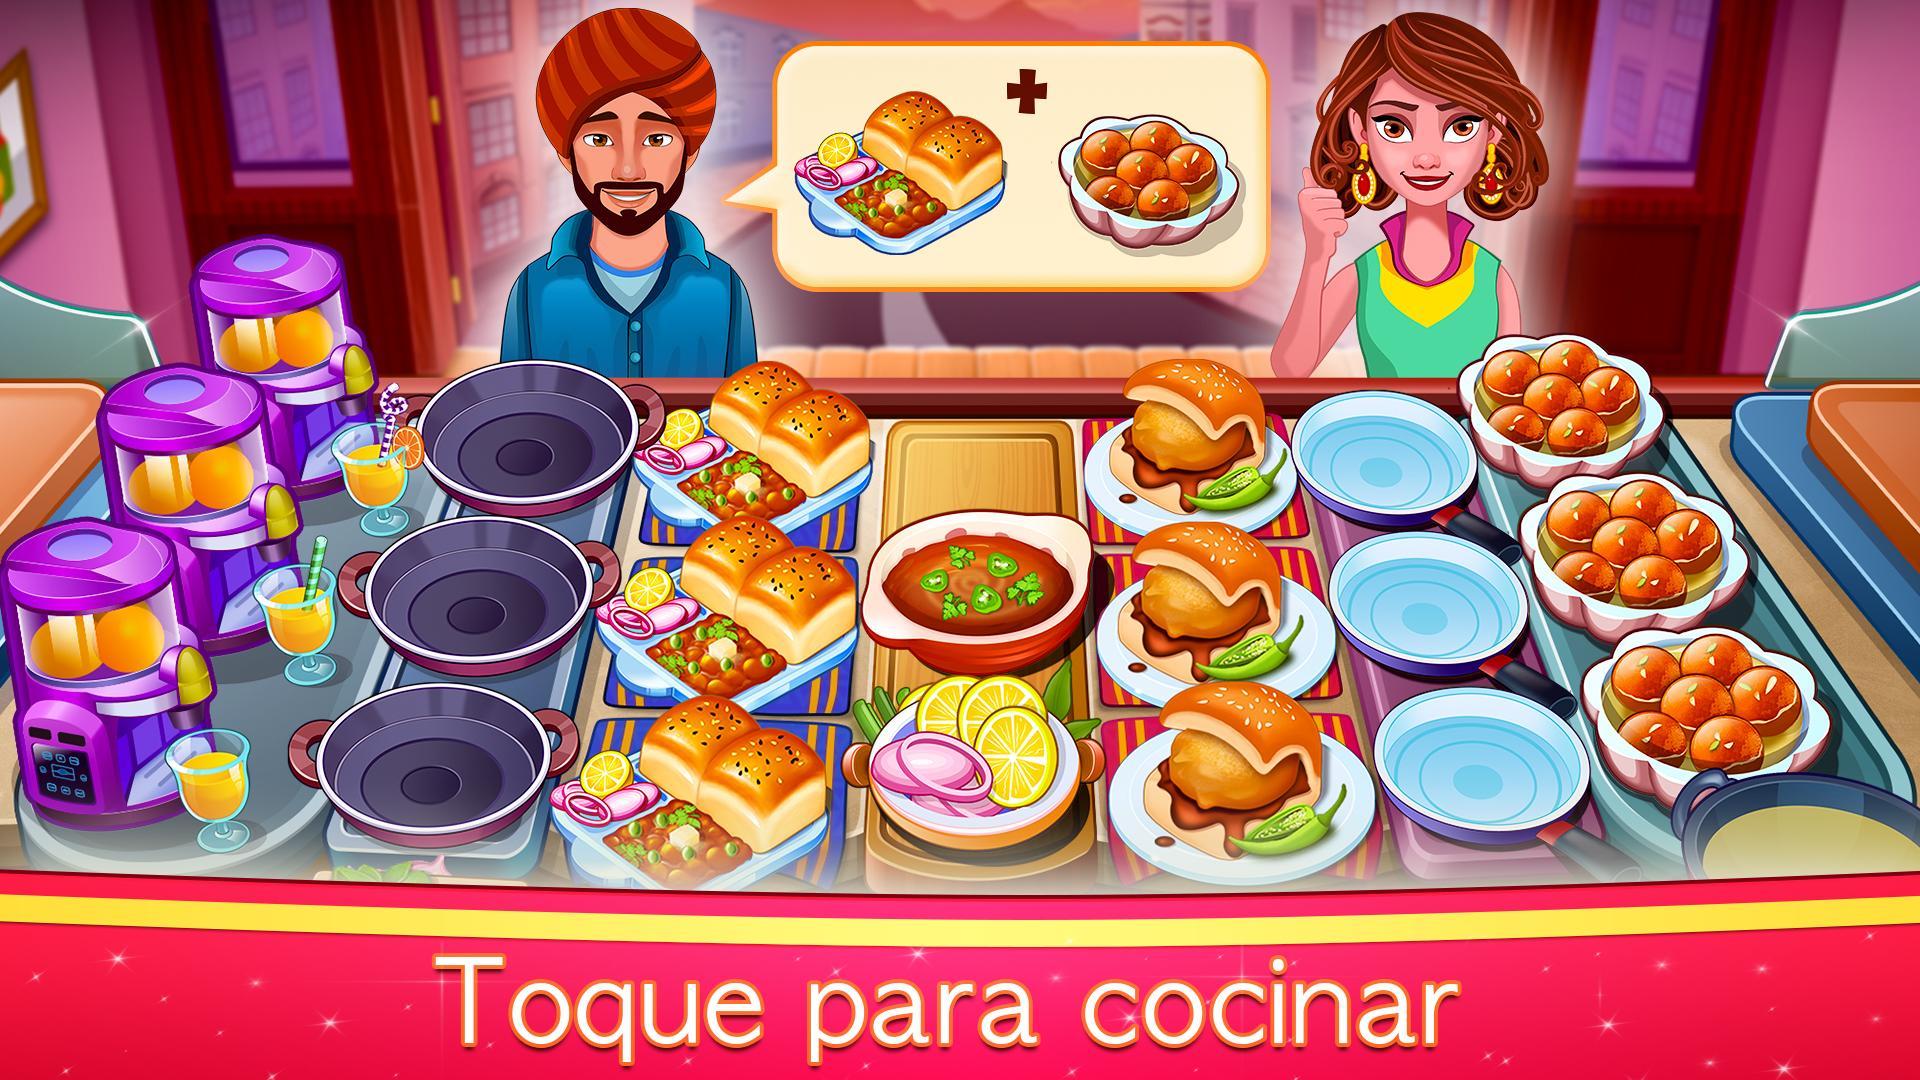 44 HQ Images Uegos De Cocina : Uno de los mejores juegos de cocina - Juegos On-line ...